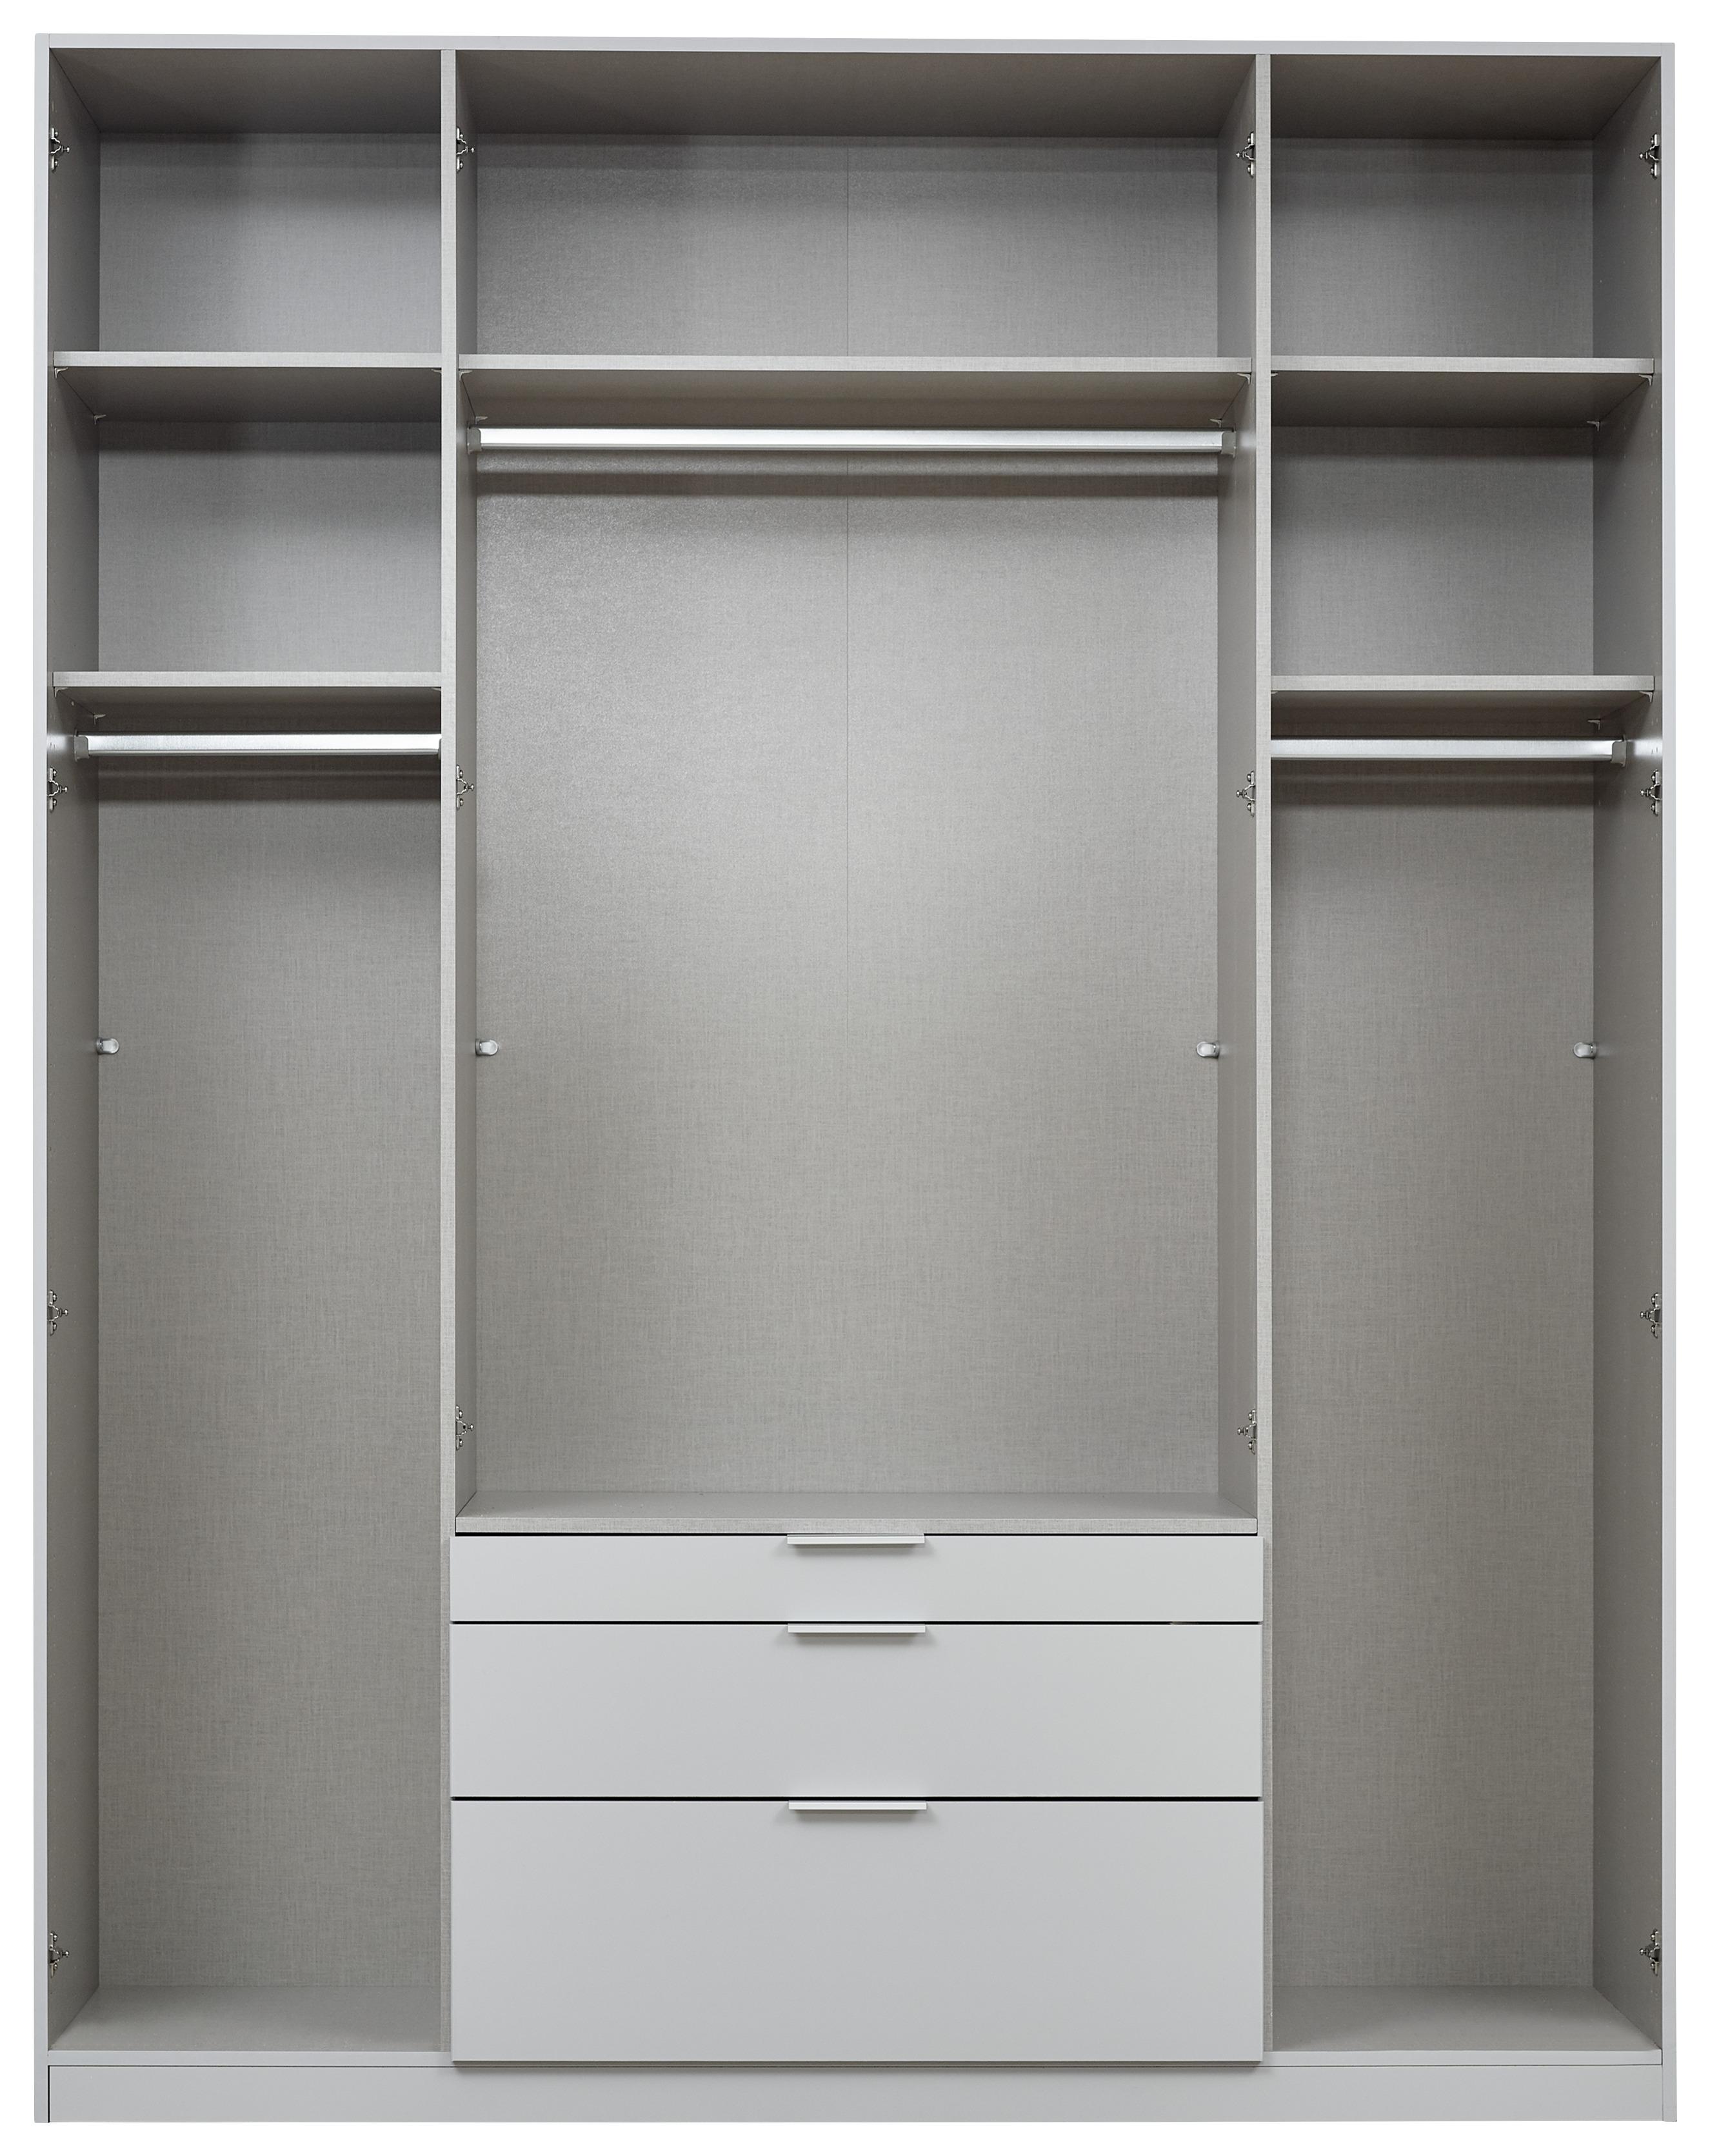 Skříň S Otočnými Dveřmi Alabama - světle šedá/barvy hliníku, Moderní, kompozitní dřevo (181/229/54cm)